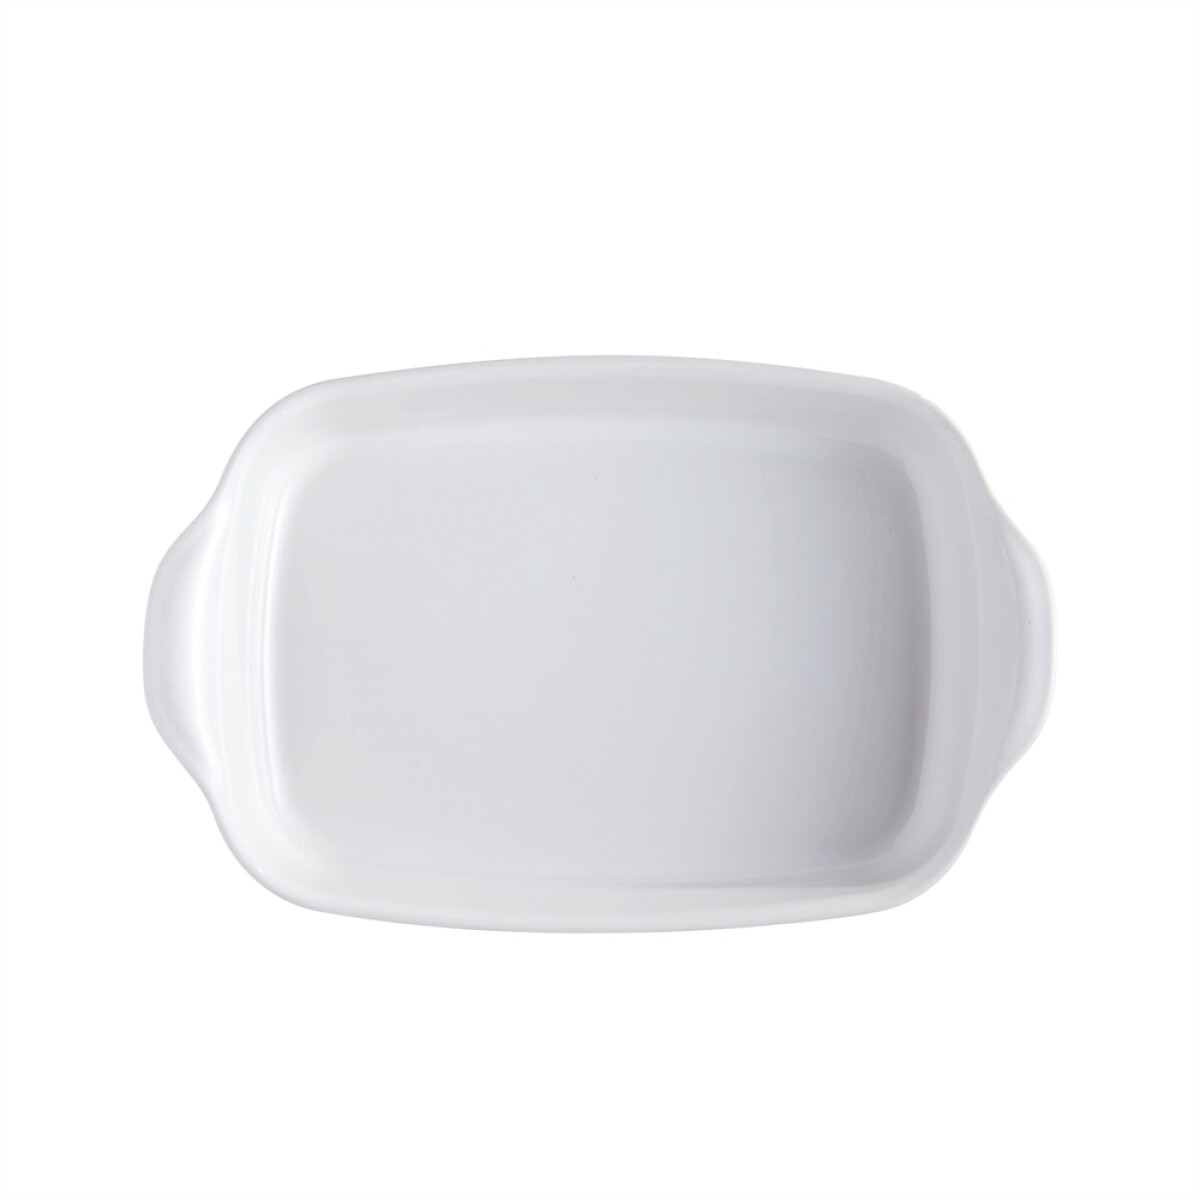 Керамична тава EMILE HENRY RECTANGULAR OVEN DISH - 36,5 х 23,5 см, цвят бял